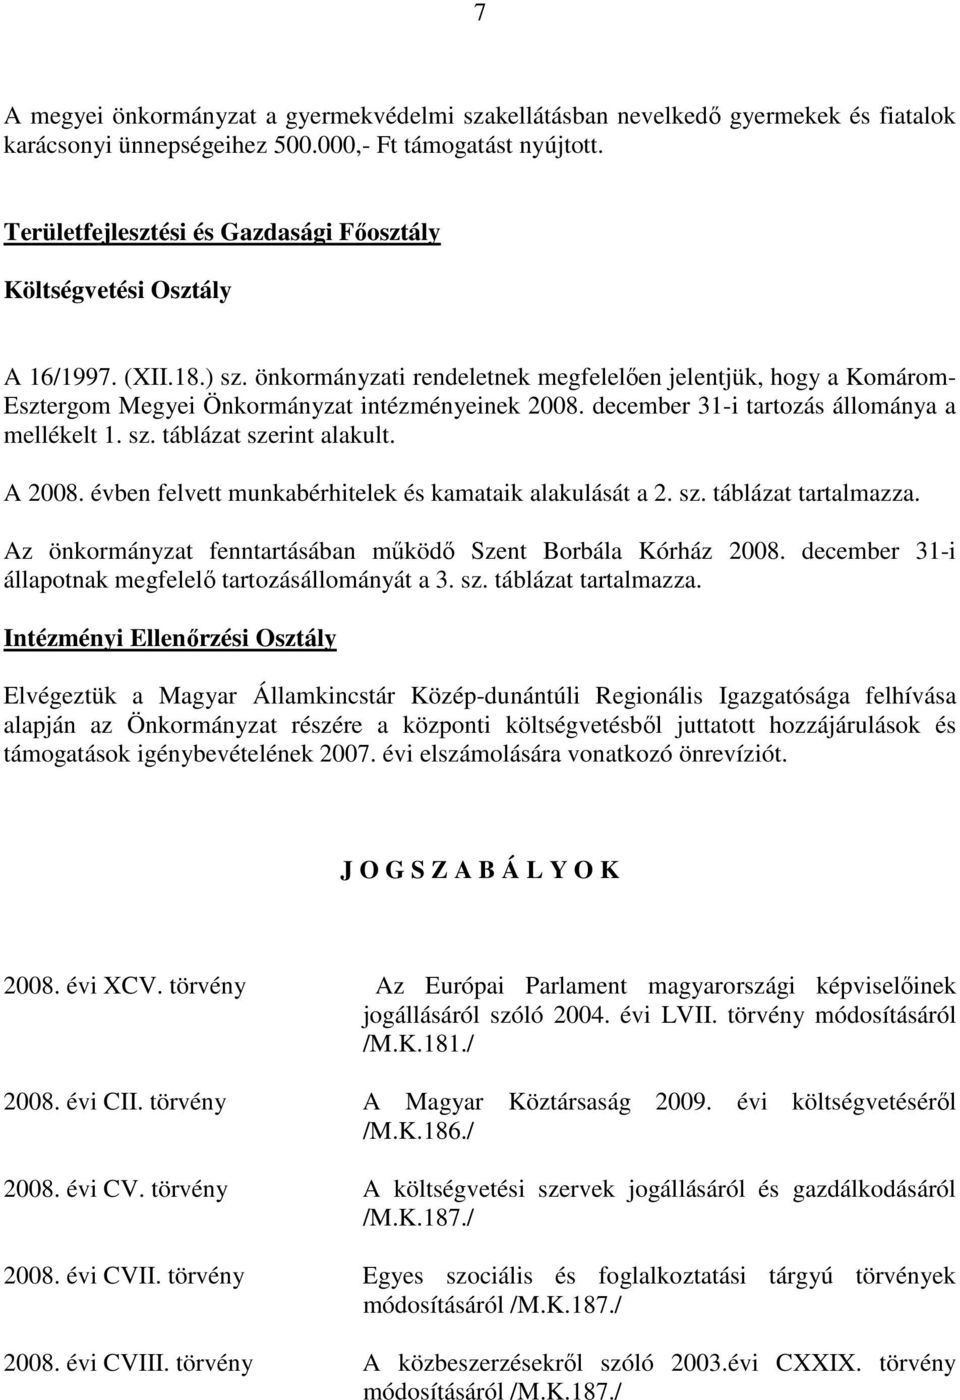 önkormányzati rendeletnek megfelelıen jelentjük, hogy a Komárom- Esztergom Megyei Önkormányzat intézményeinek 2008. december 31-i tartozás állománya a mellékelt 1. sz. táblázat szerint alakult.